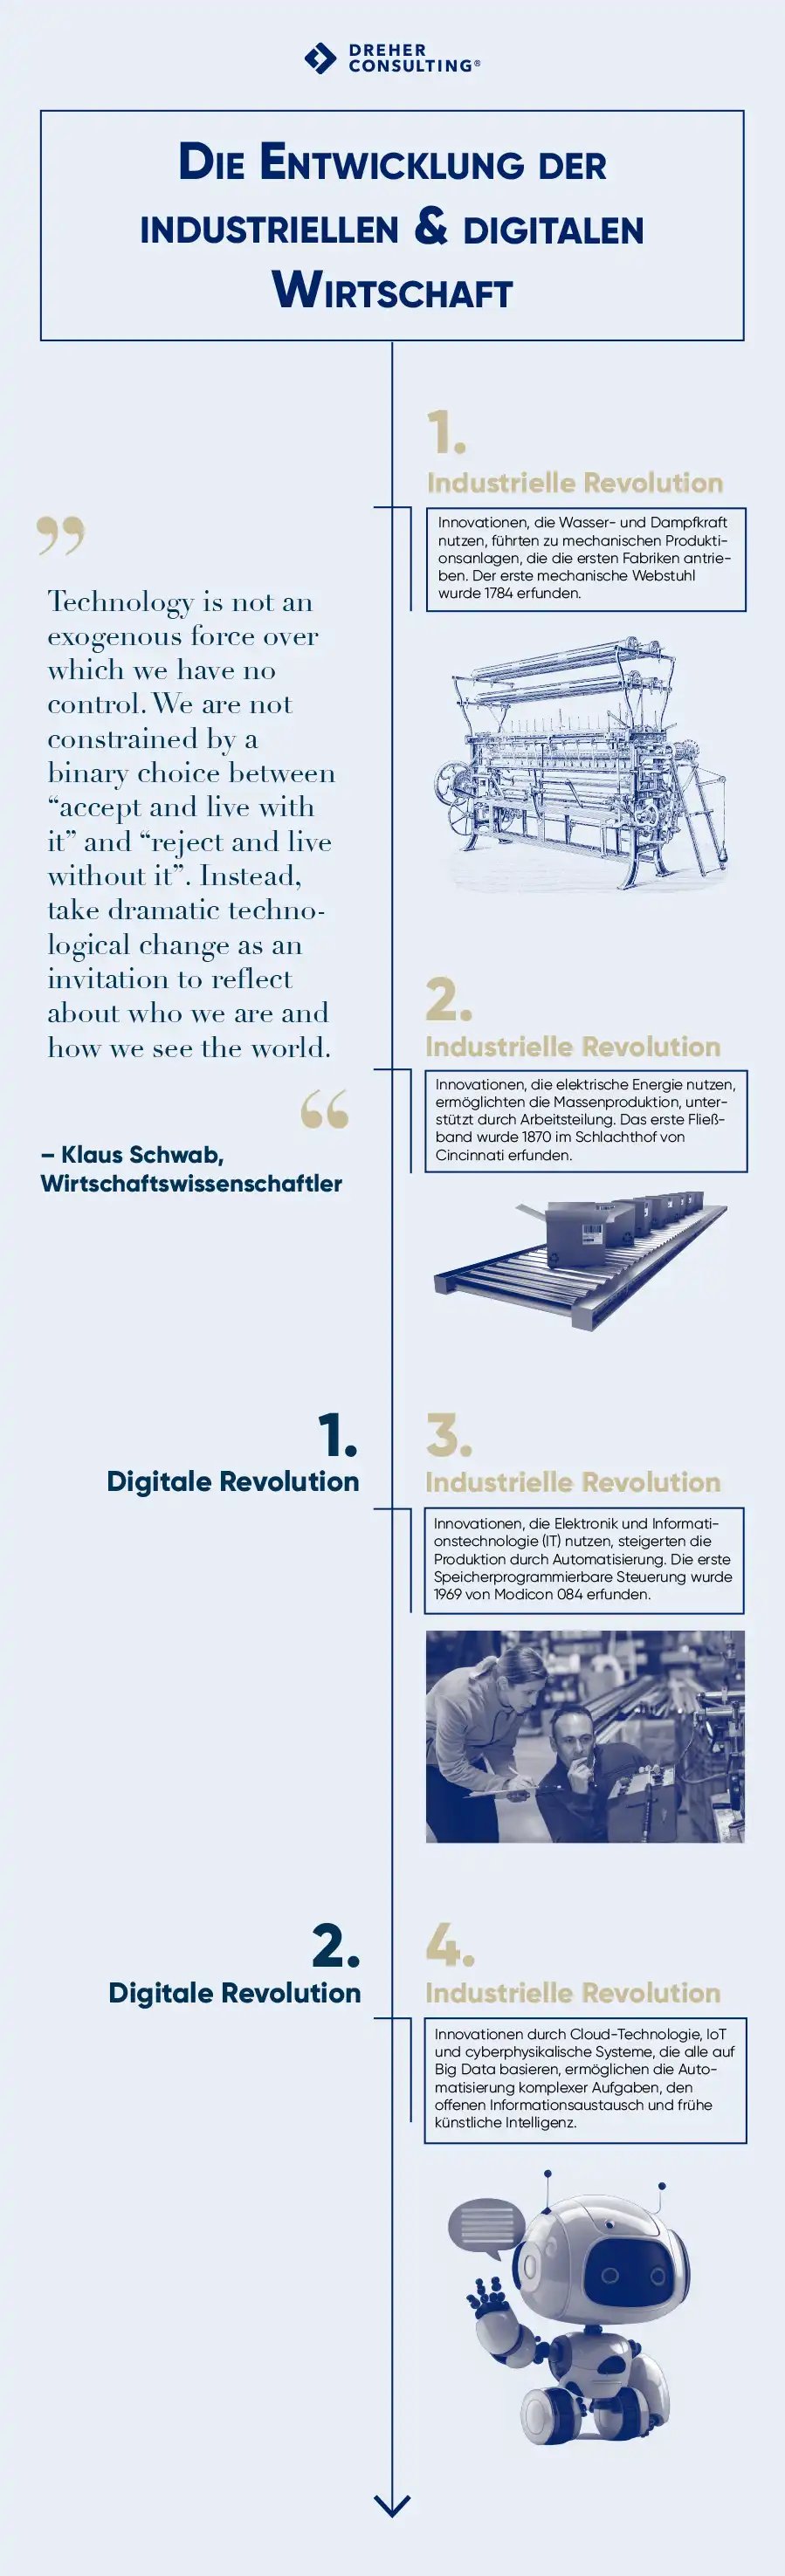 Die Entwicklung der digitalen und industriellen Revolution